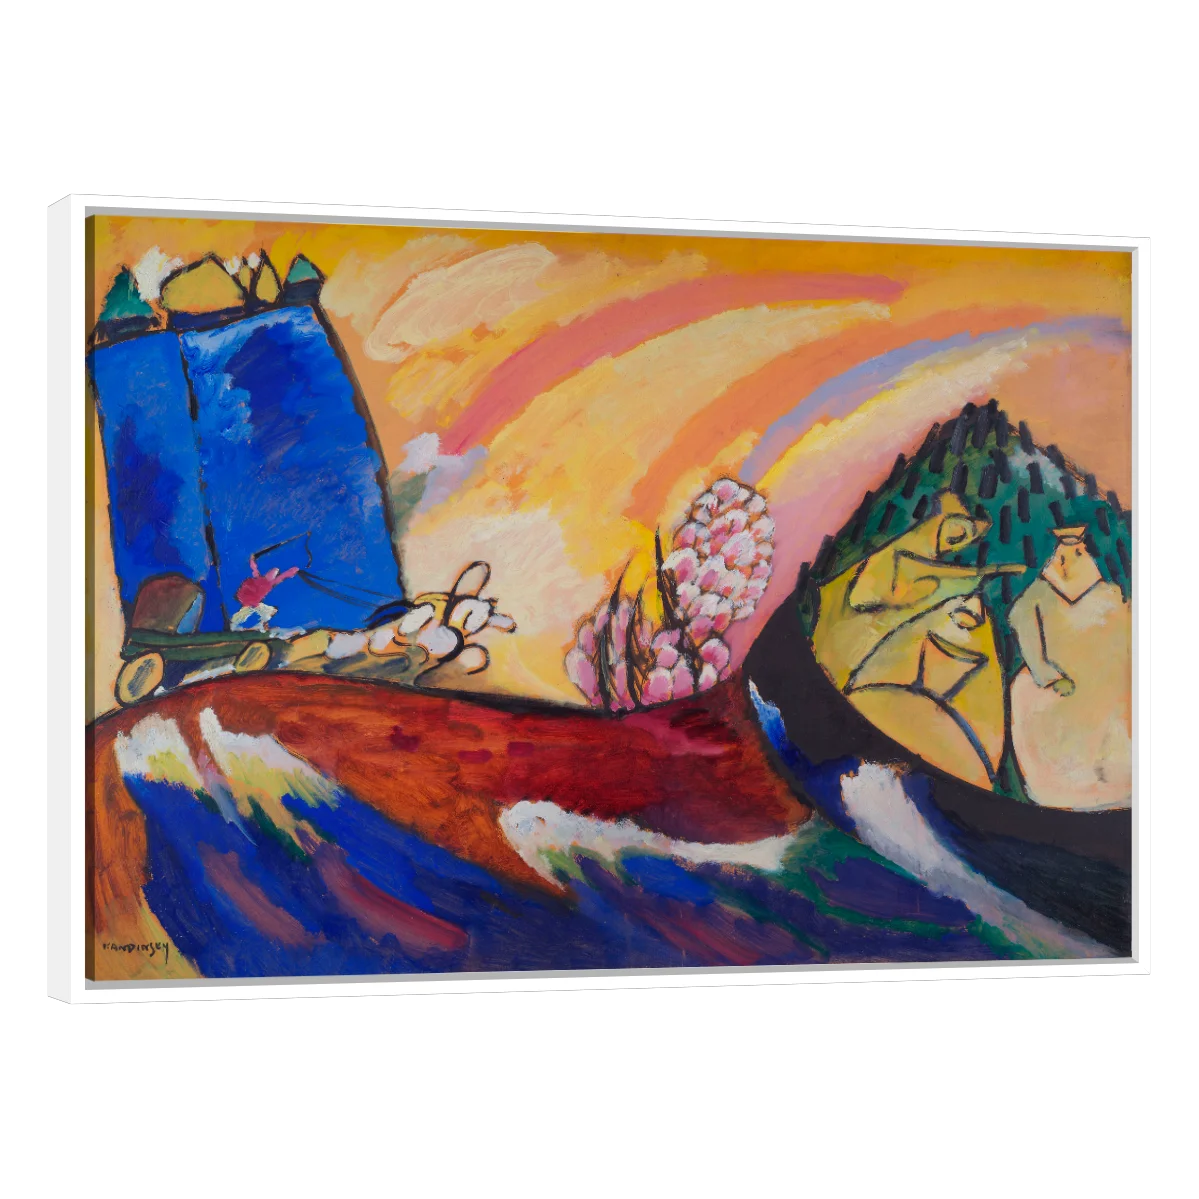 Pintar Con Troika Vasily Kandinsky